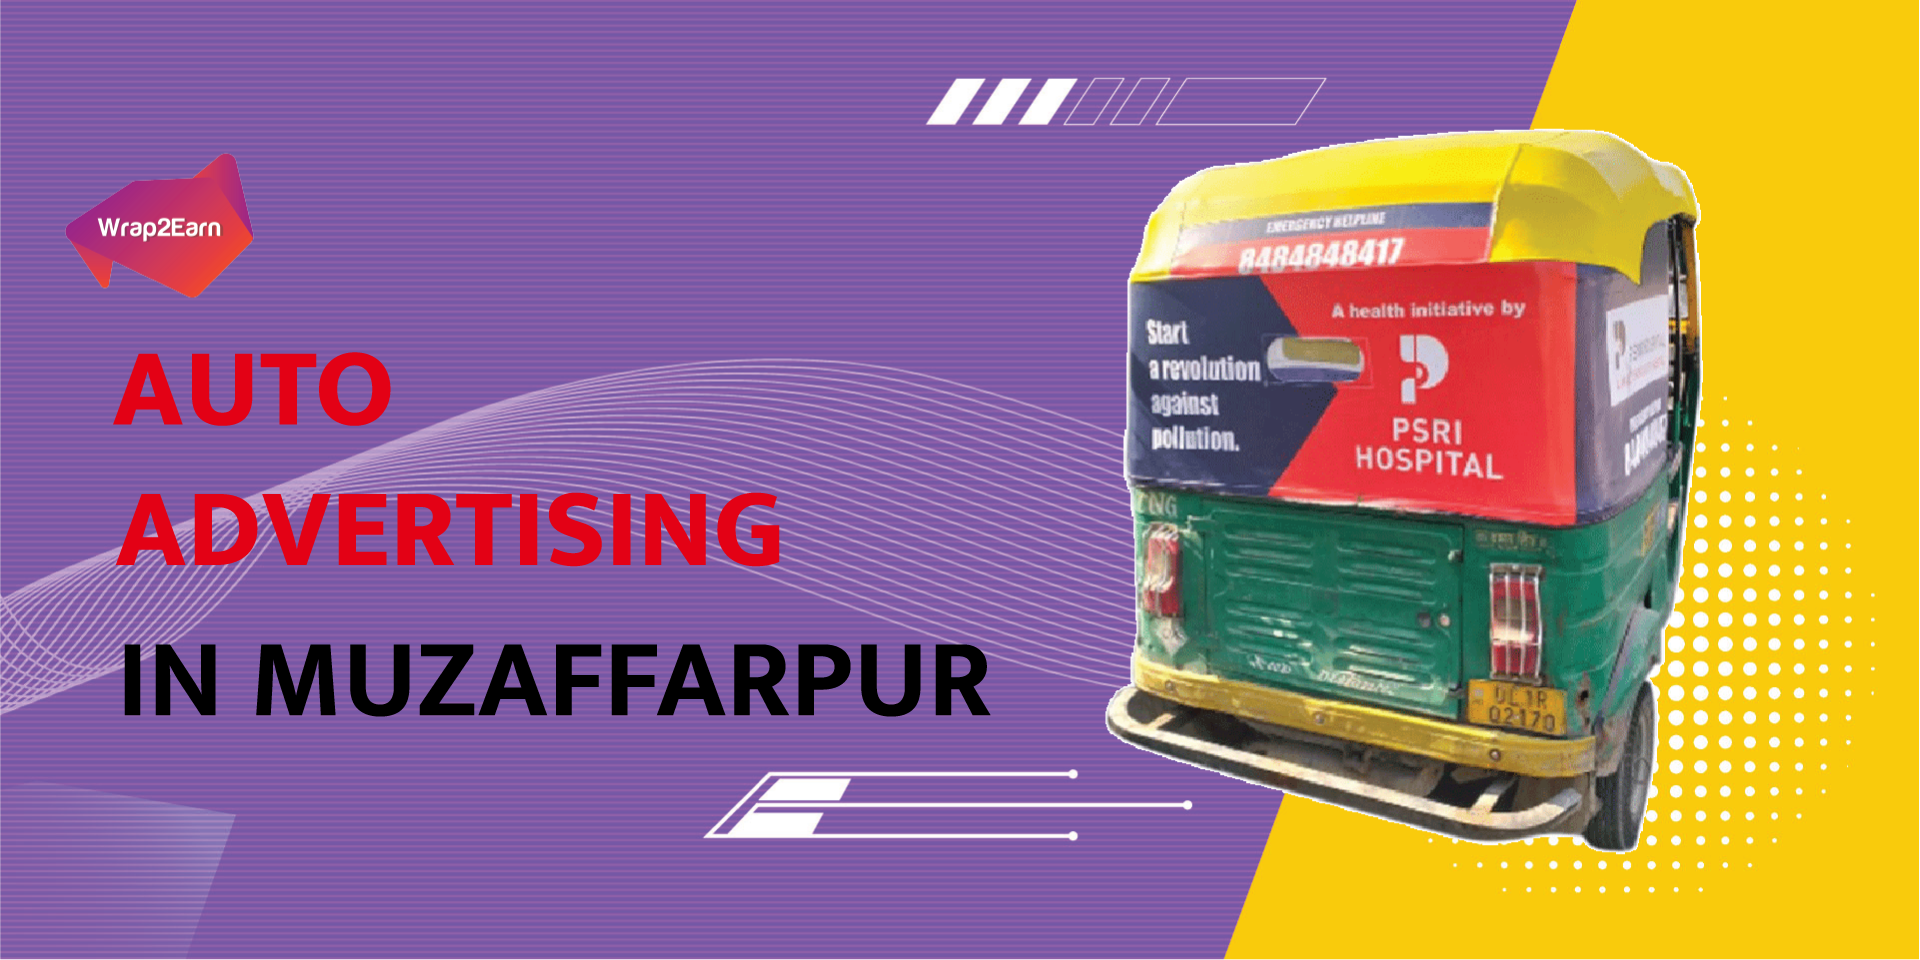 Auto Advertising In Muzaffarpur